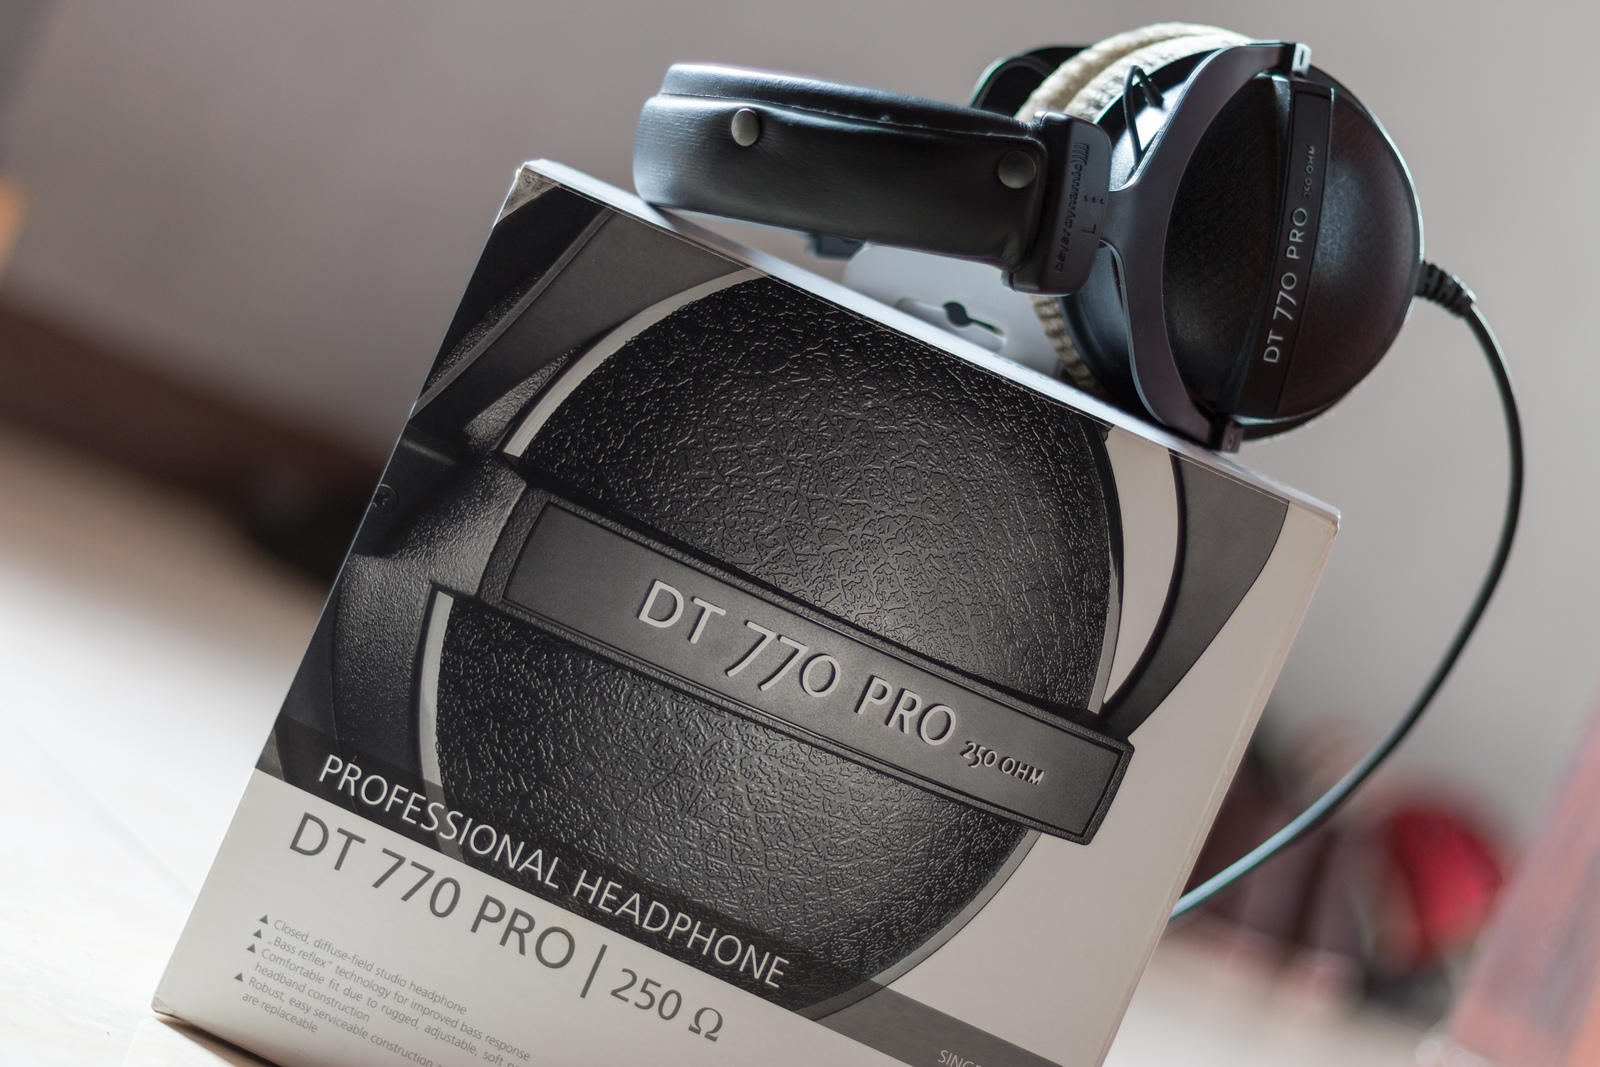 Beyerdynamic DT770 Pro 250 ohm headphones